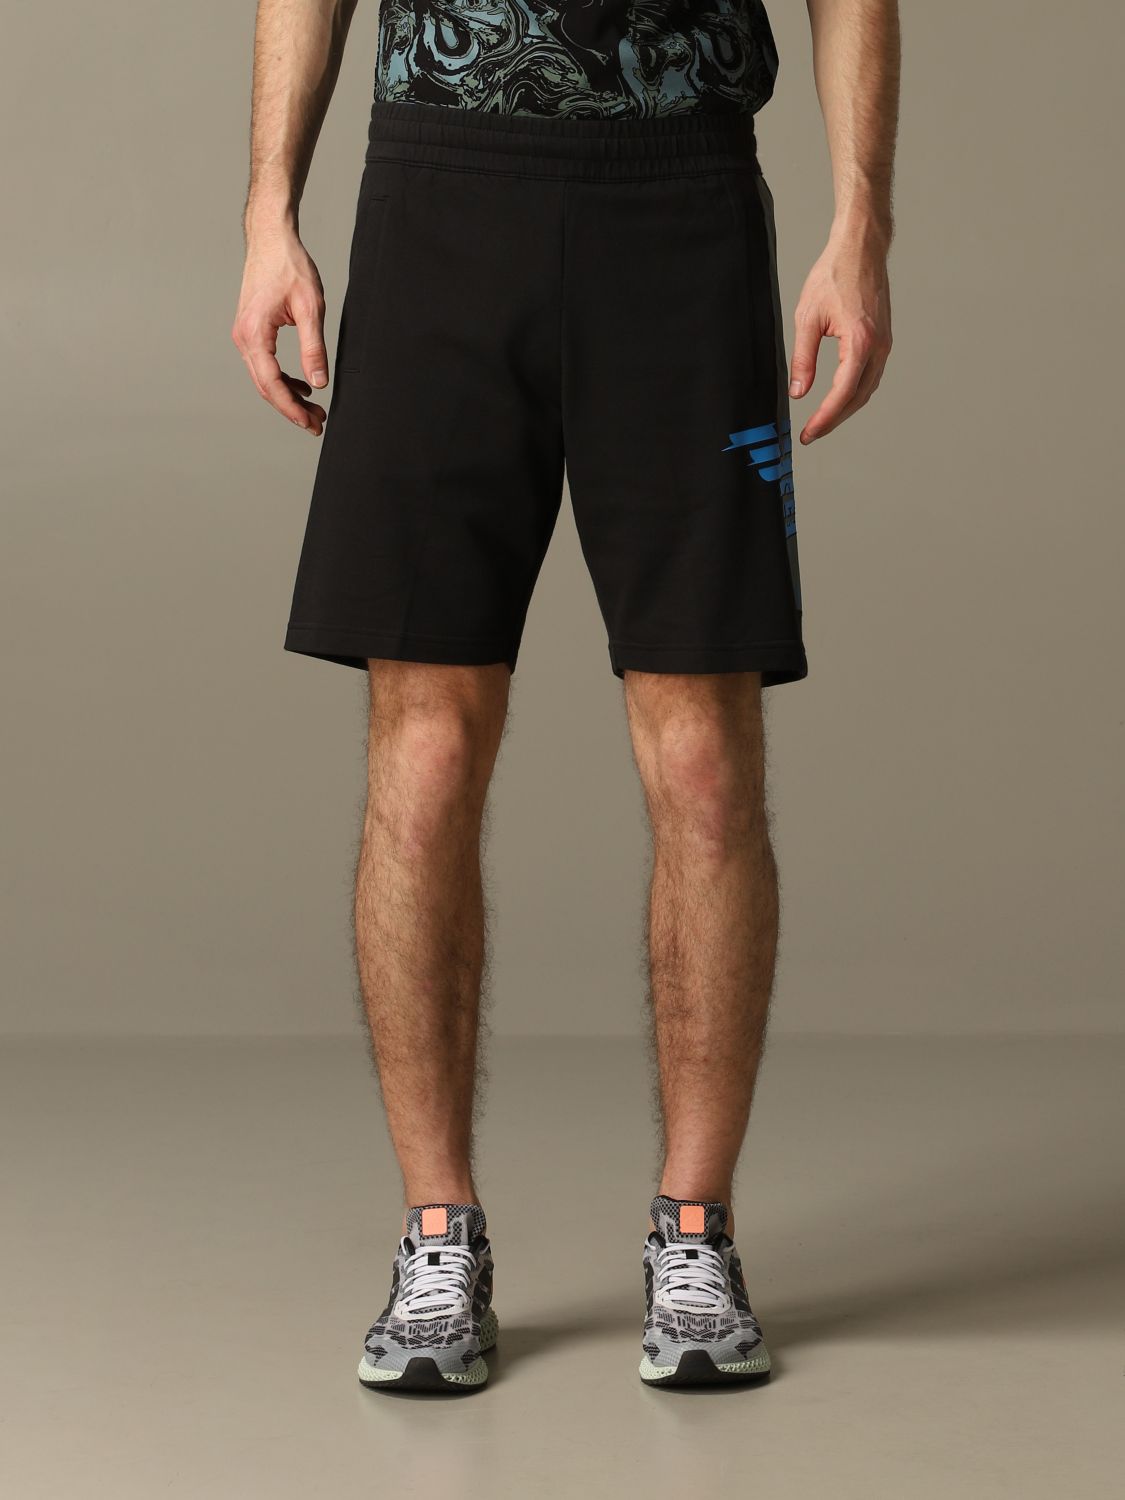 ea7 bermuda shorts